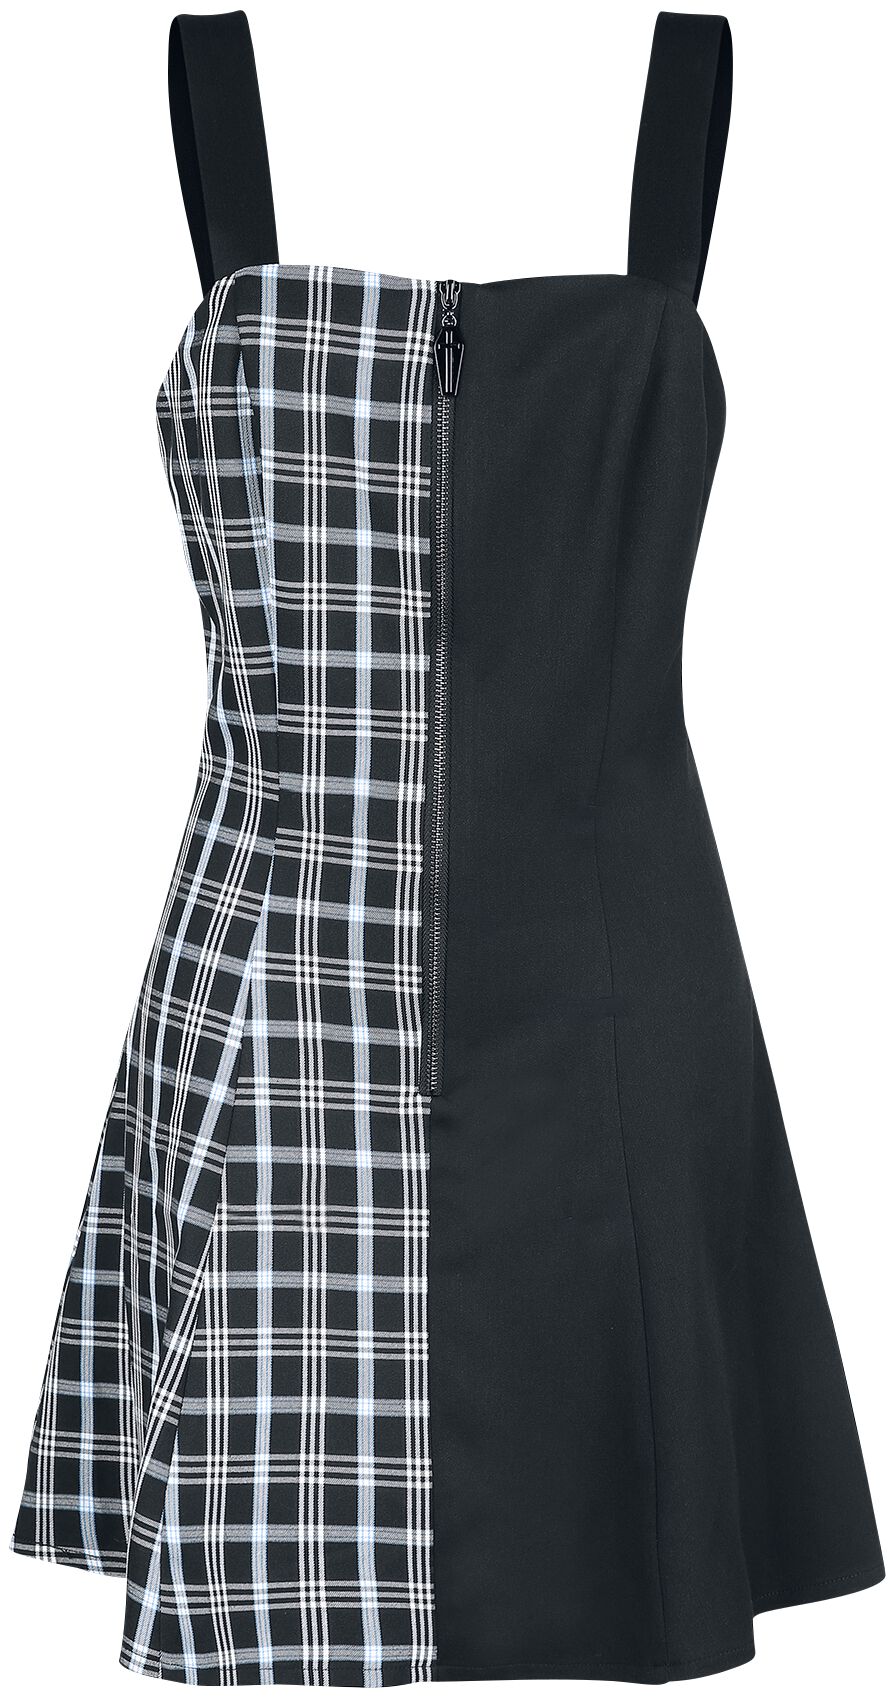 Banned Alternative - Gothic Kurzes Kleid - Death Check Dress - XS bis XXL - für Damen - Größe XL - schwarz/blau